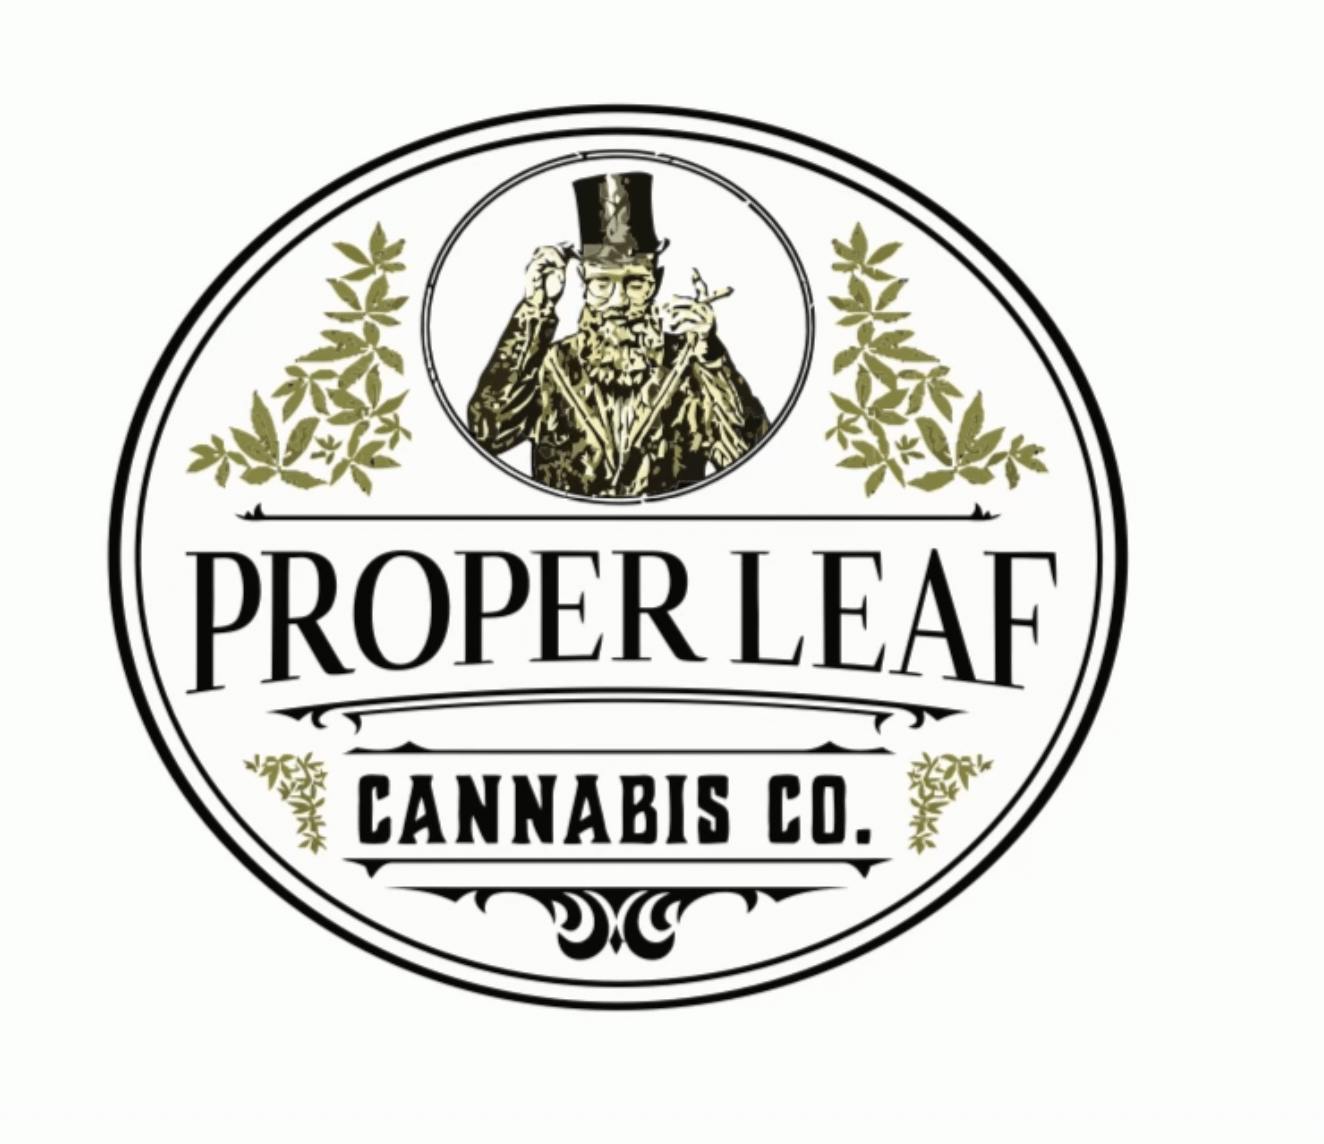 Proper Leaf Cannabis Co. logo